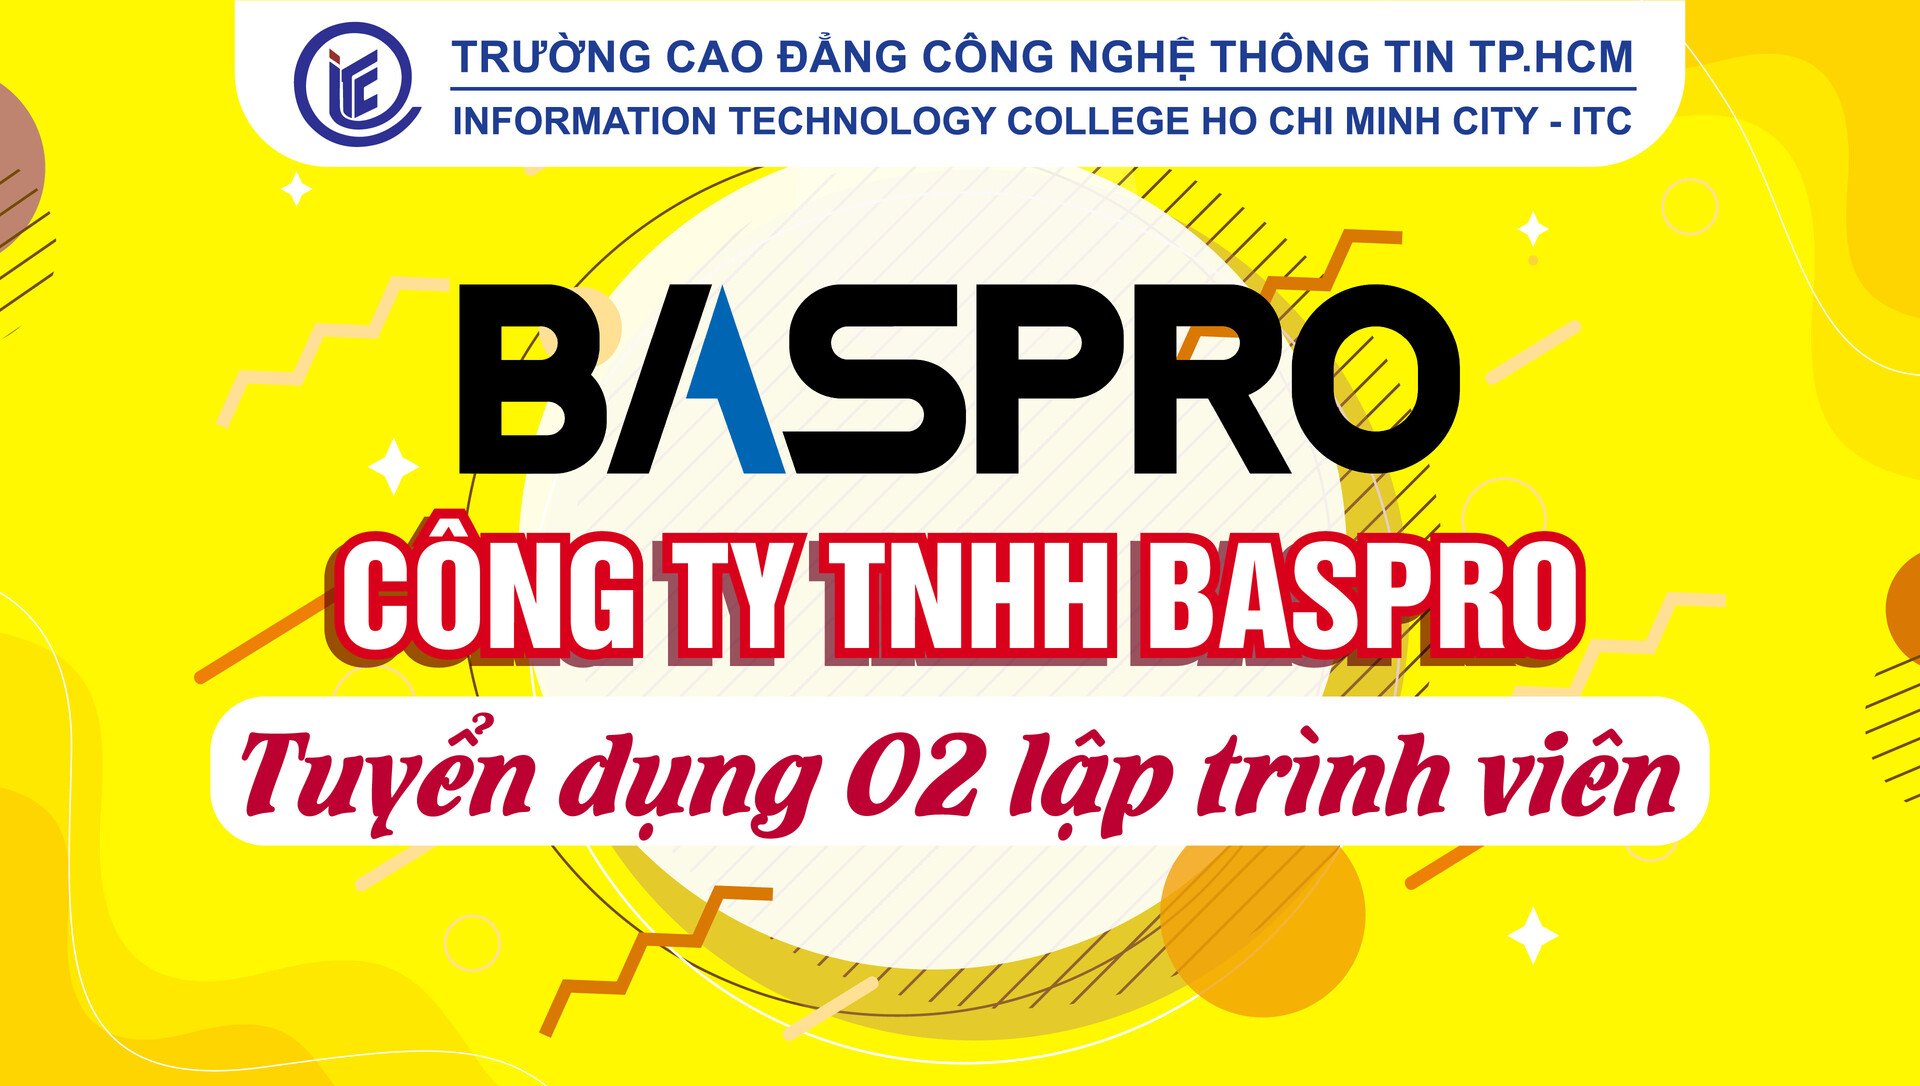 Công ty TNHH BASPRO tuyển dụng 2 lập trình viên